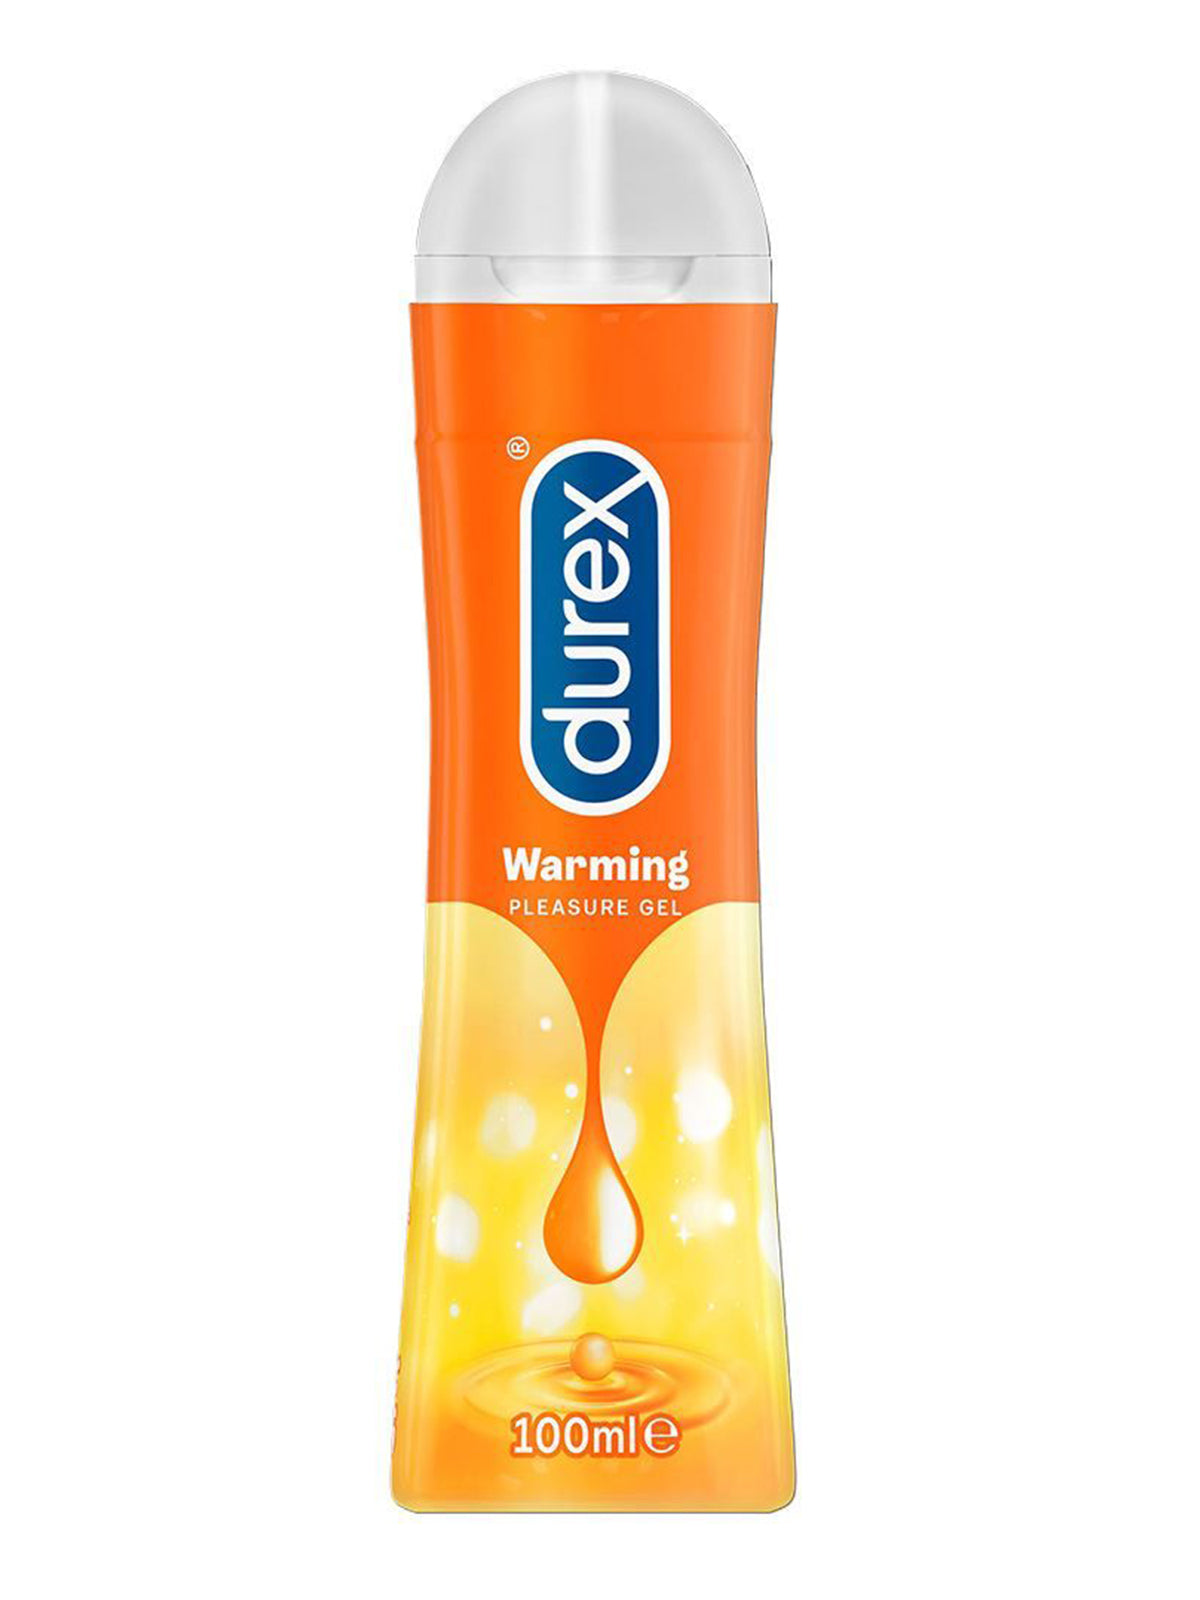 Durex (UK) Warming Water Based Pleasure Gel Lube 100ml